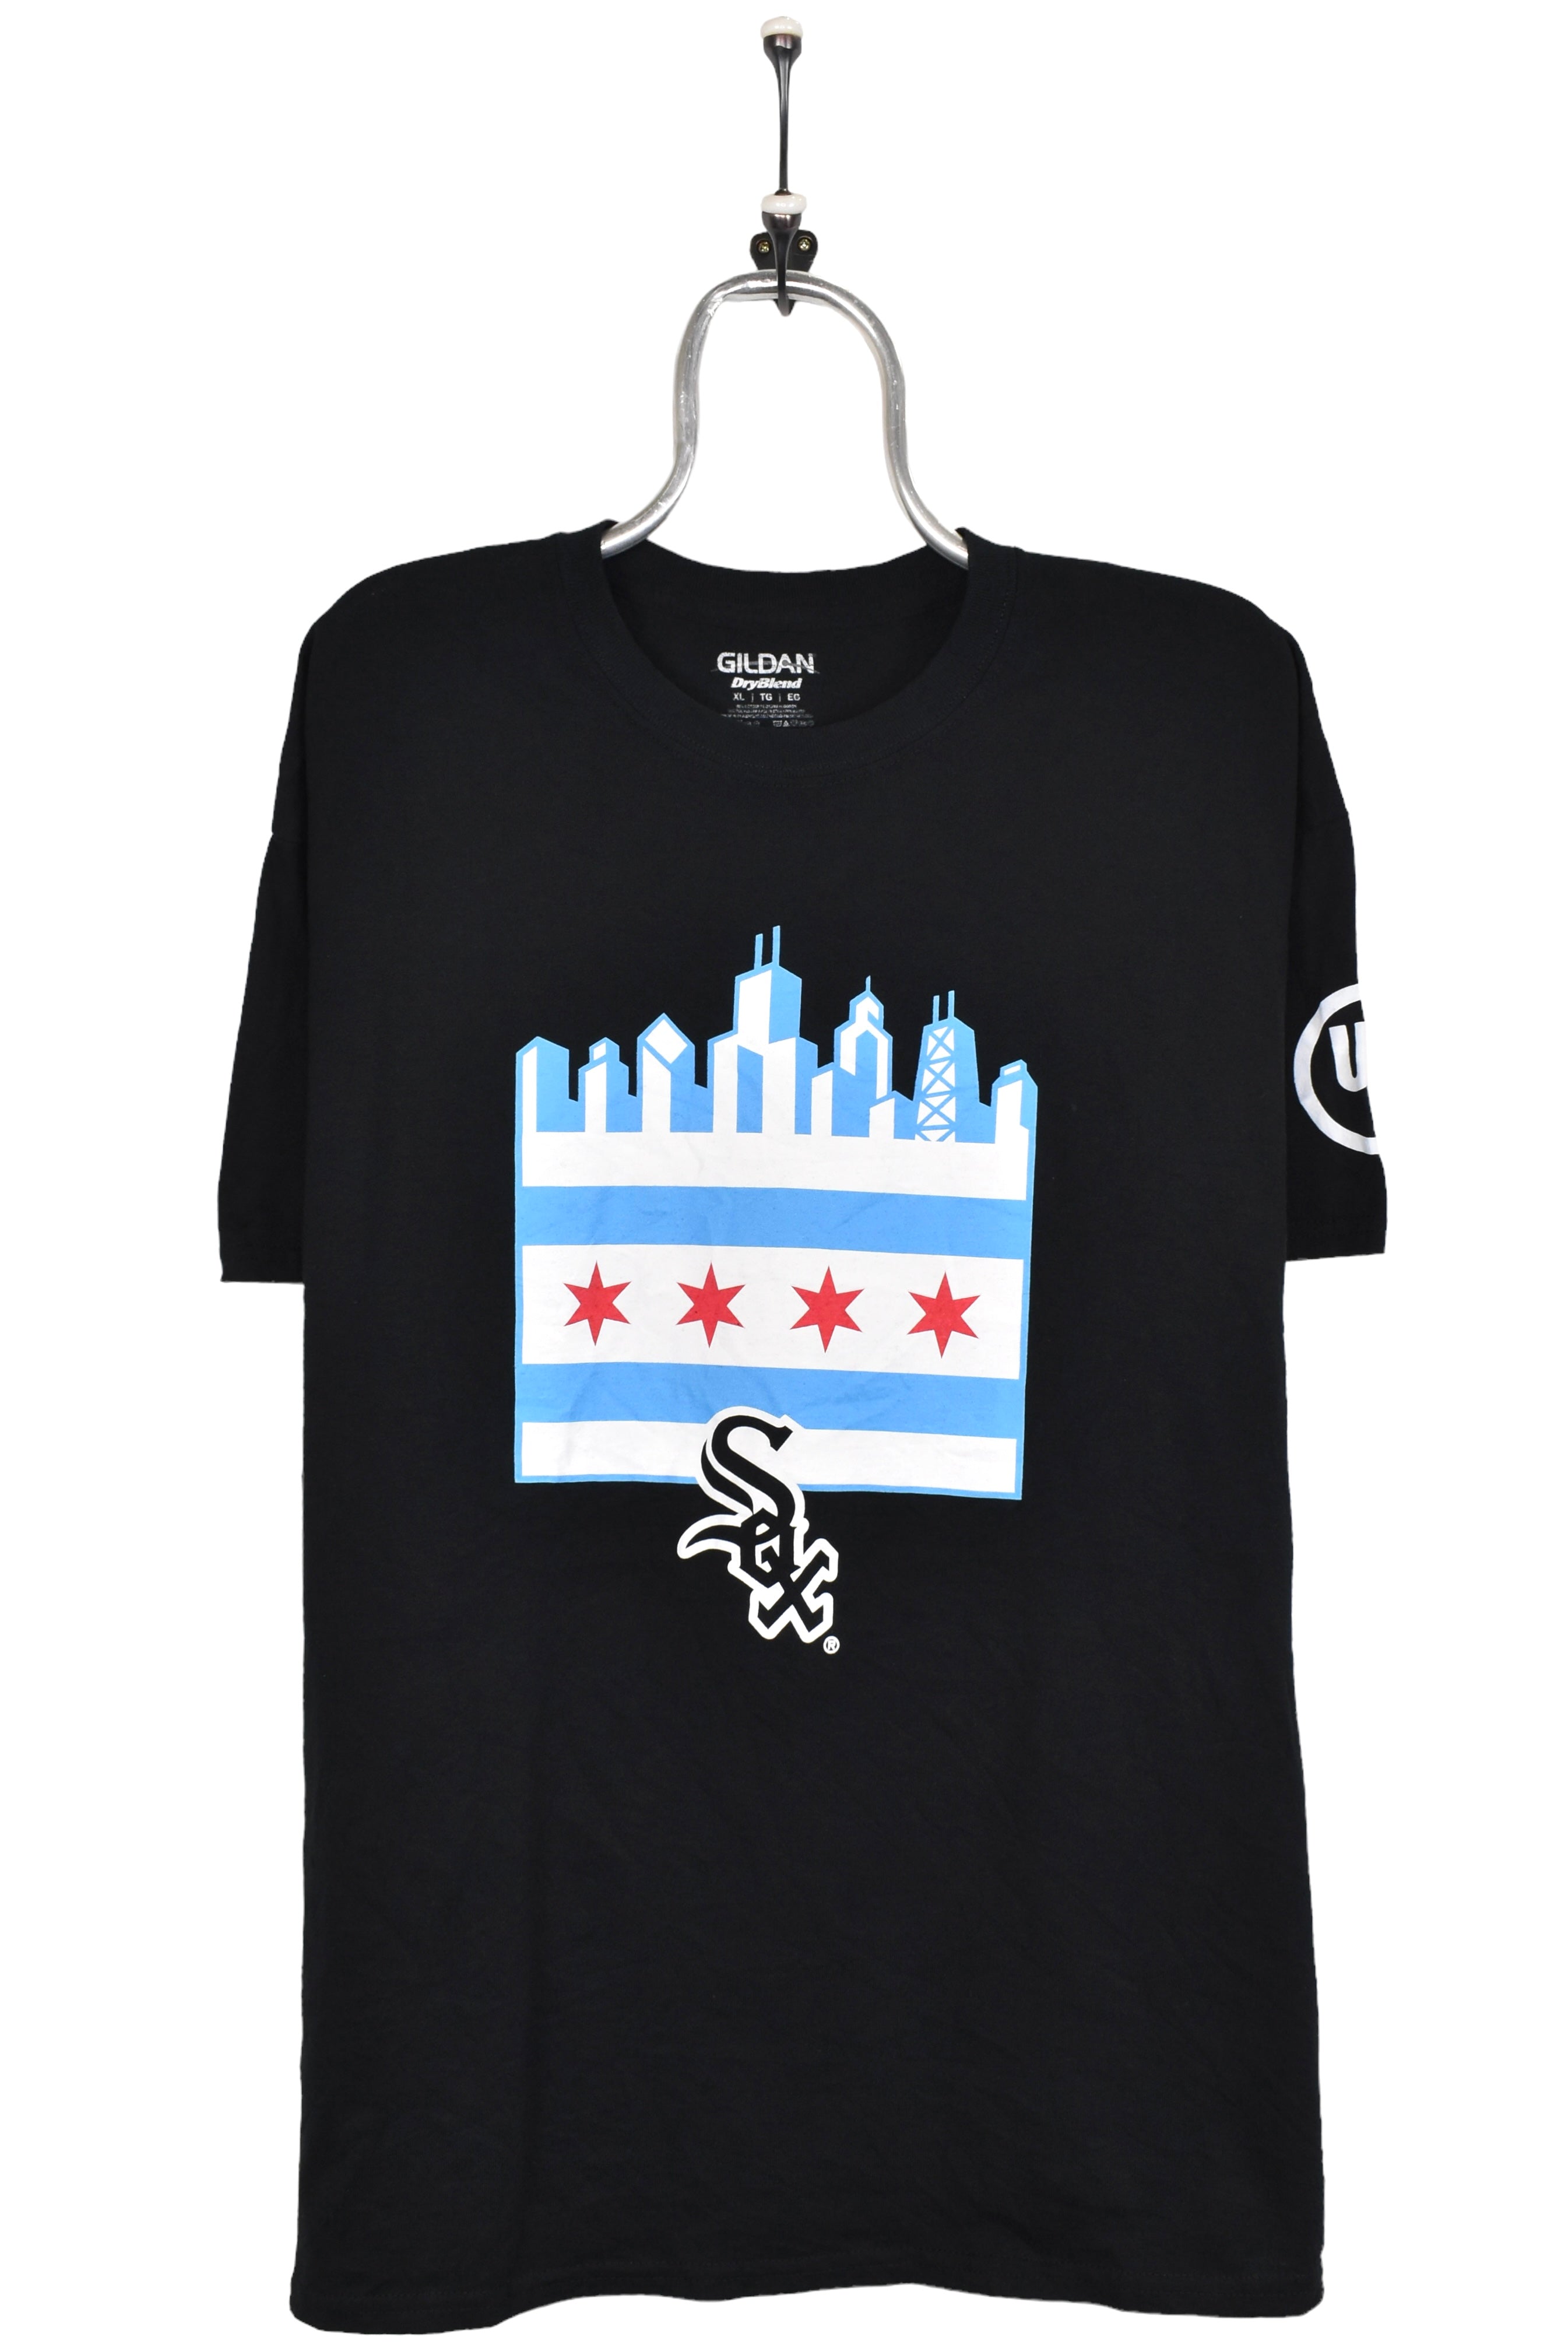 Modern Chicago White Sox shirt, black graphic tee - AU XL